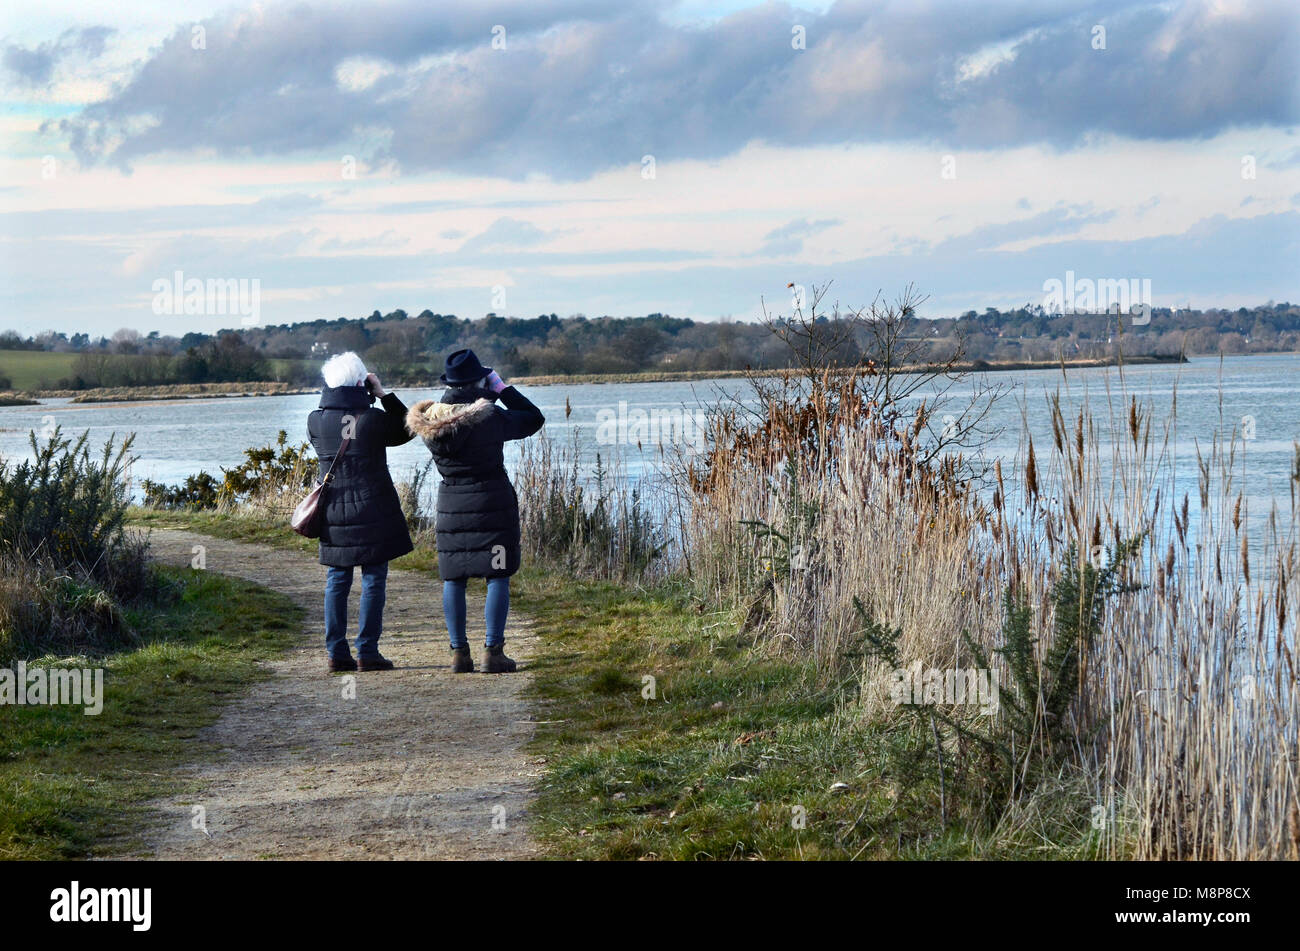 Deux femmes d'observateurs d'oiseaux à la recherche sur la rivière deben vers woodbridge suffolk angleterre uk Banque D'Images